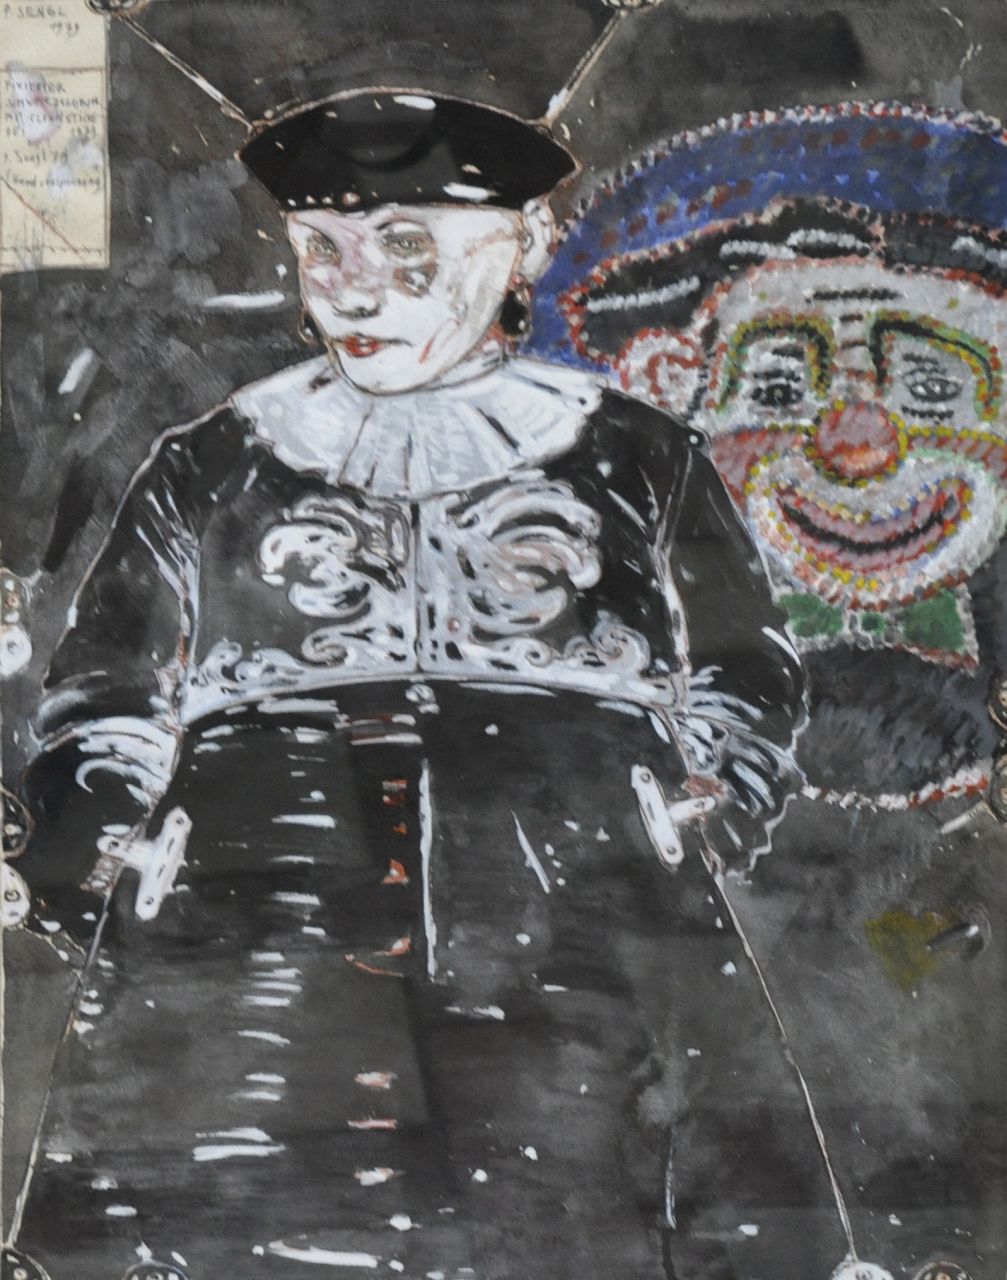 Sengl P.  | Peter Sengl, Fixierter Schwarzclown mit Clownstickerei, gouache op papier 60,5 x 46,7 cm, gesigneerd linksboven en gedateerd 1979